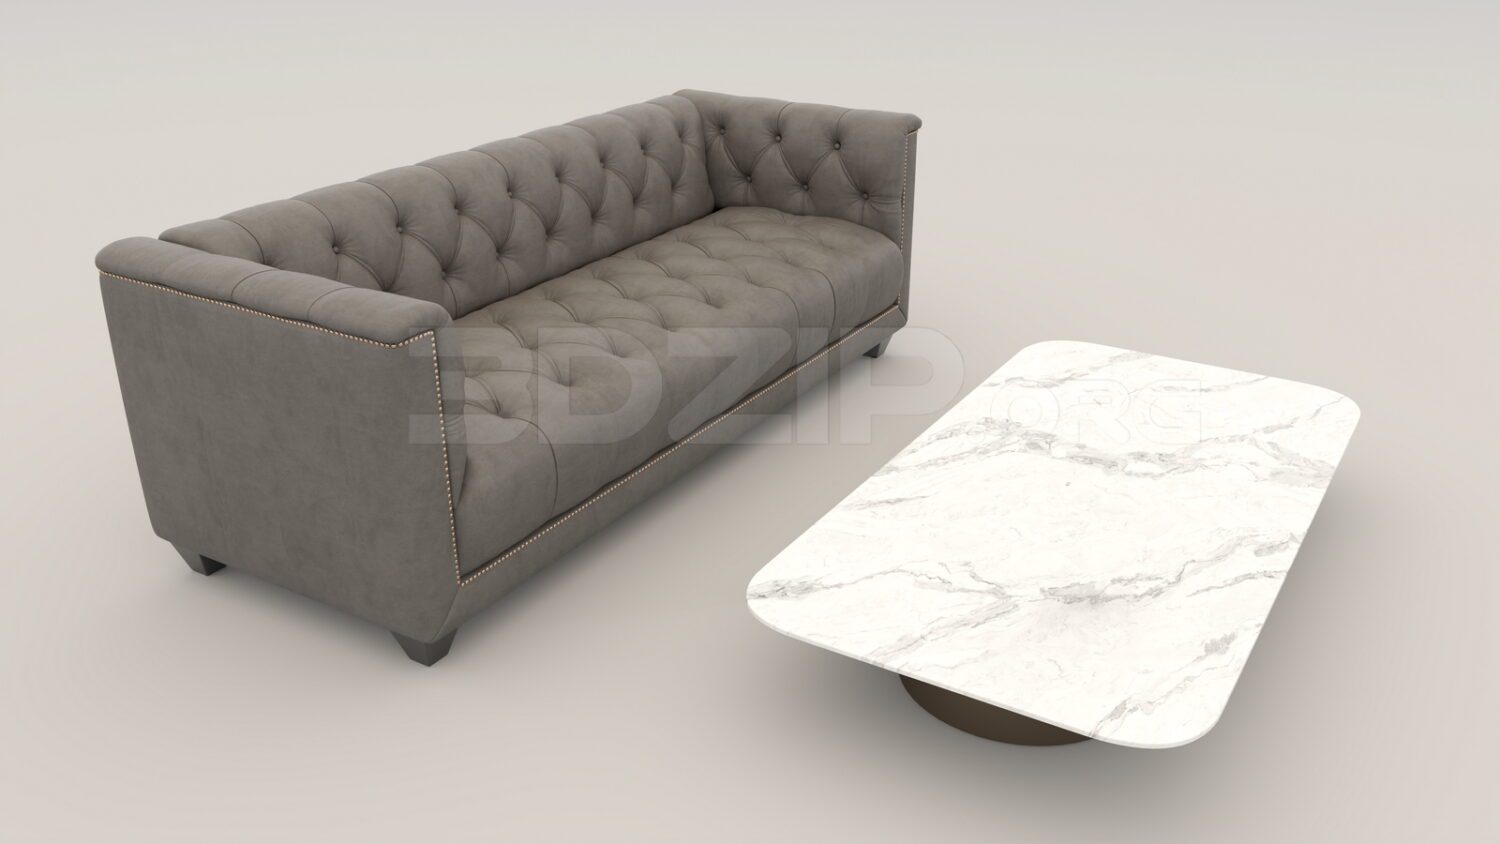 4619. Free 3D Sofa Model Download